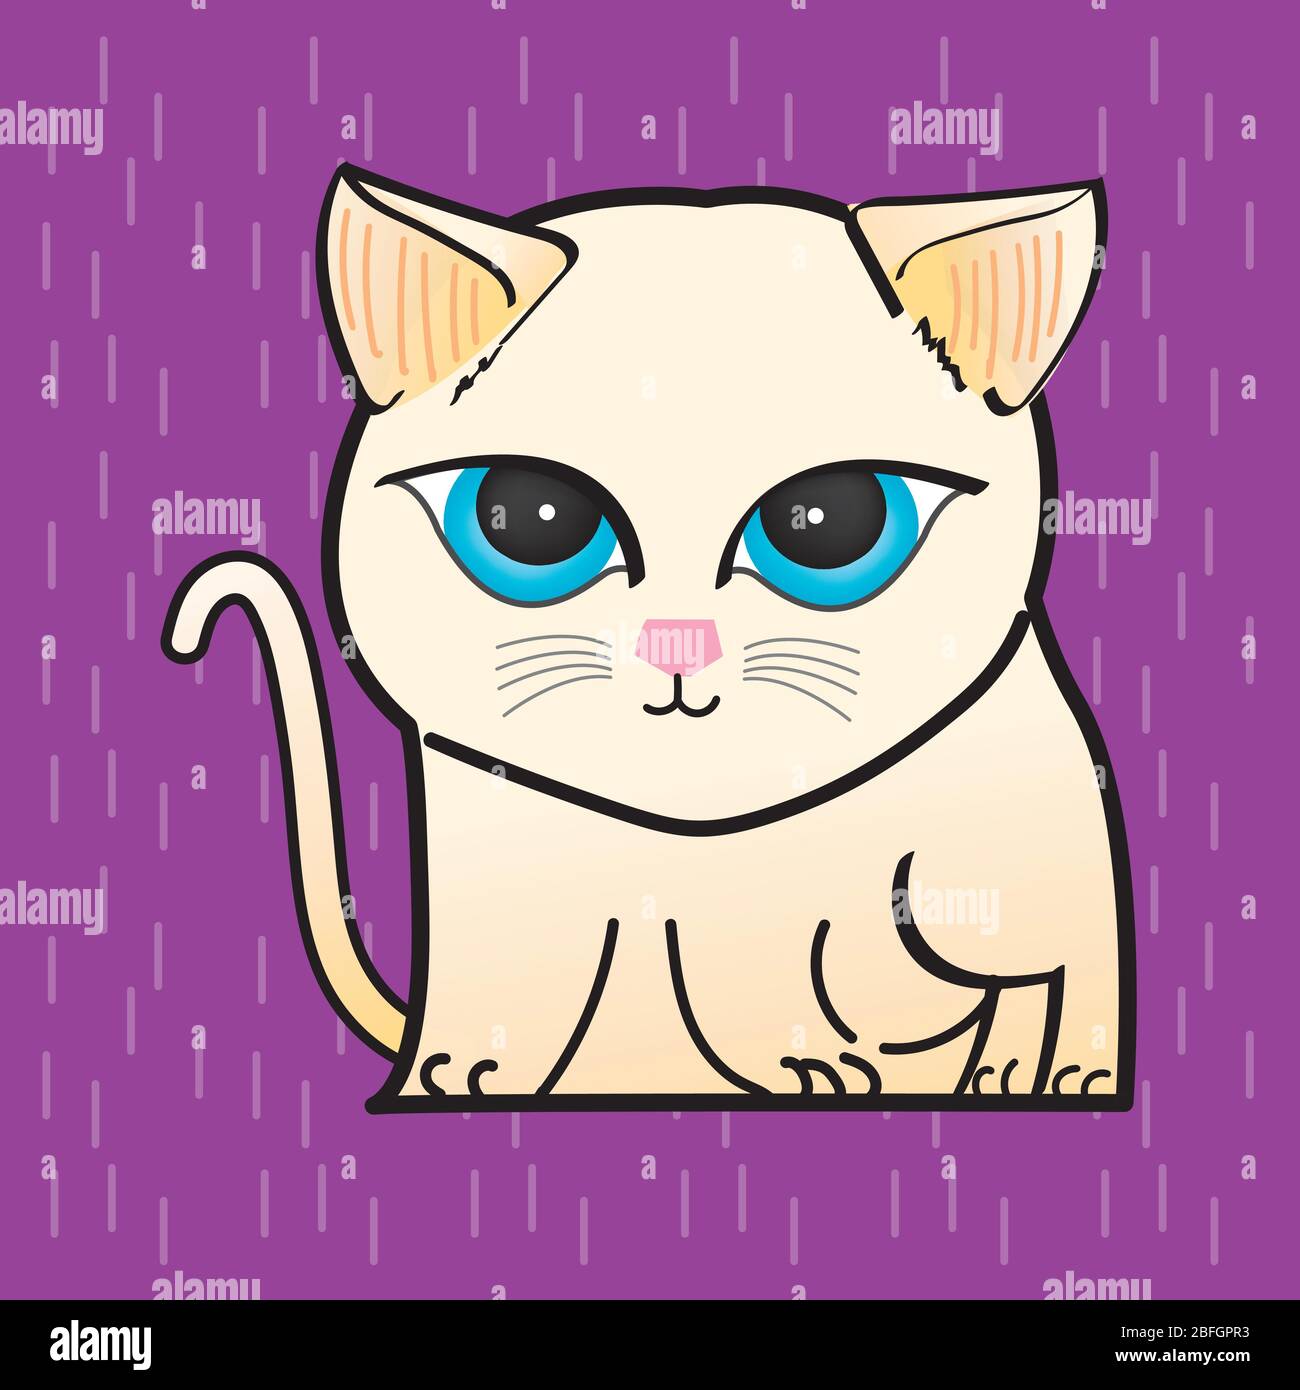 CAT Illustration Clipart. Eine helle Katze hat runde blaue Augen. Es ist auf einem violetten Hintergrund. Hand zeichnen Kunst Stock Vektor